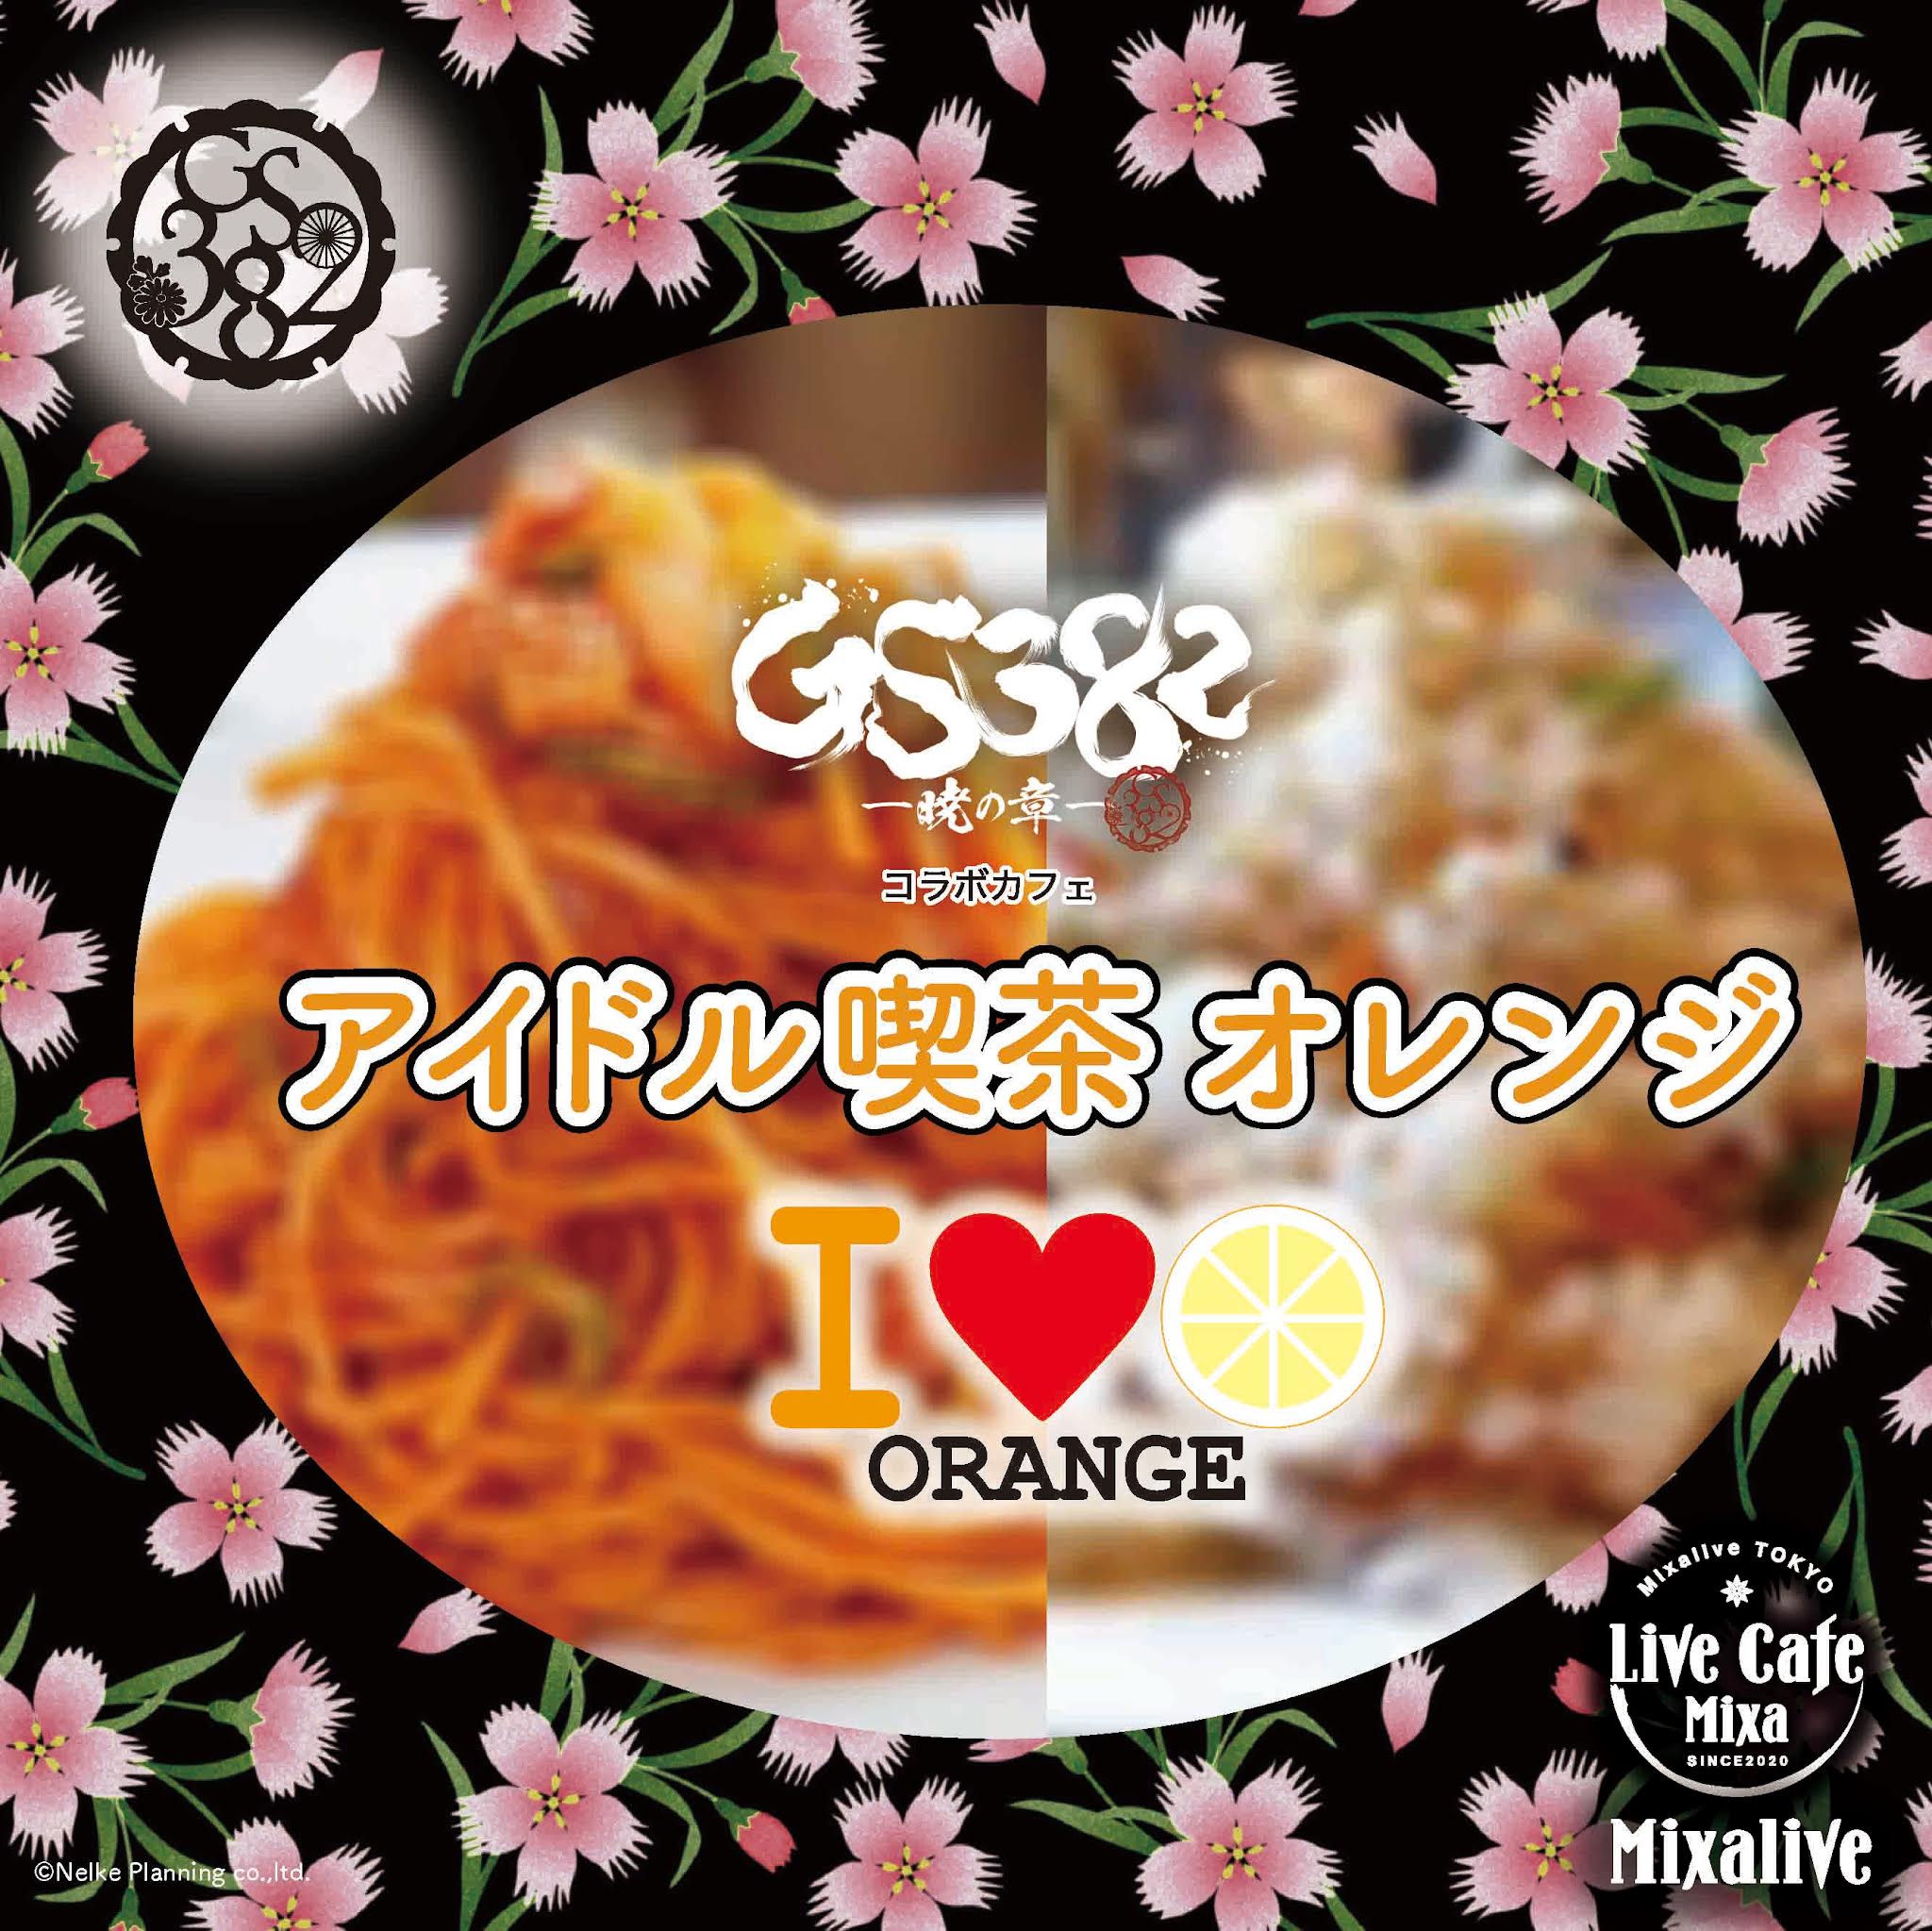 『GS382ー暁の章ー』コラボカフェ「アイドル喫茶オレンジ」